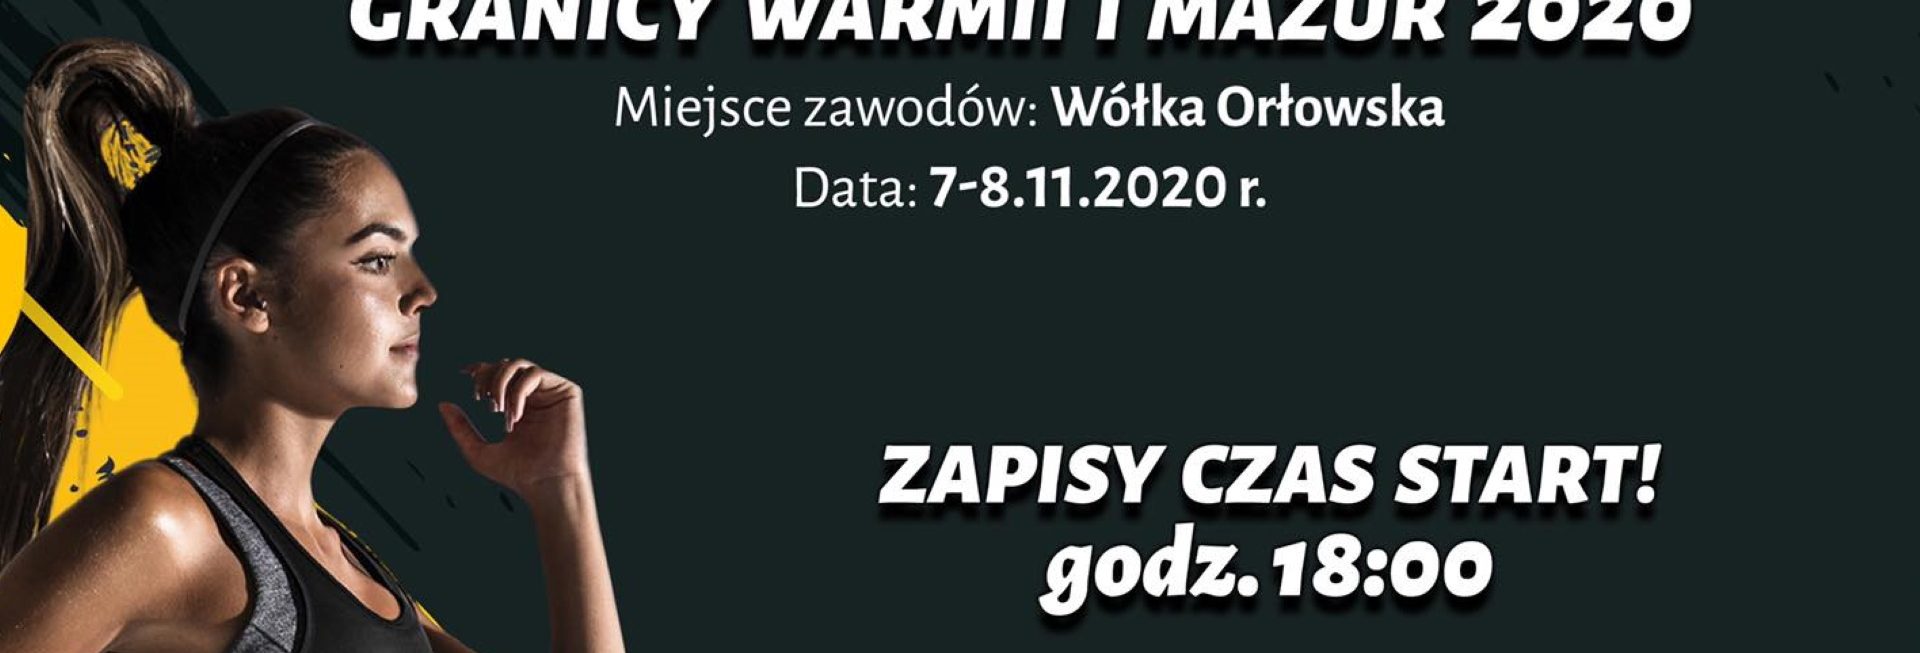 Plakat zapraszający do miejscowości Wólka Orłowska na Bieg Grand Prix Granicy Warmii i Mazur - Wólka Orłowska 2020. Plakat o czarnym tle na którym po lewej stronie jest zdjęcie przedstawiające zawodniczkę podczas biegu. Na plakacie tekstowe informacje o imprezie.     